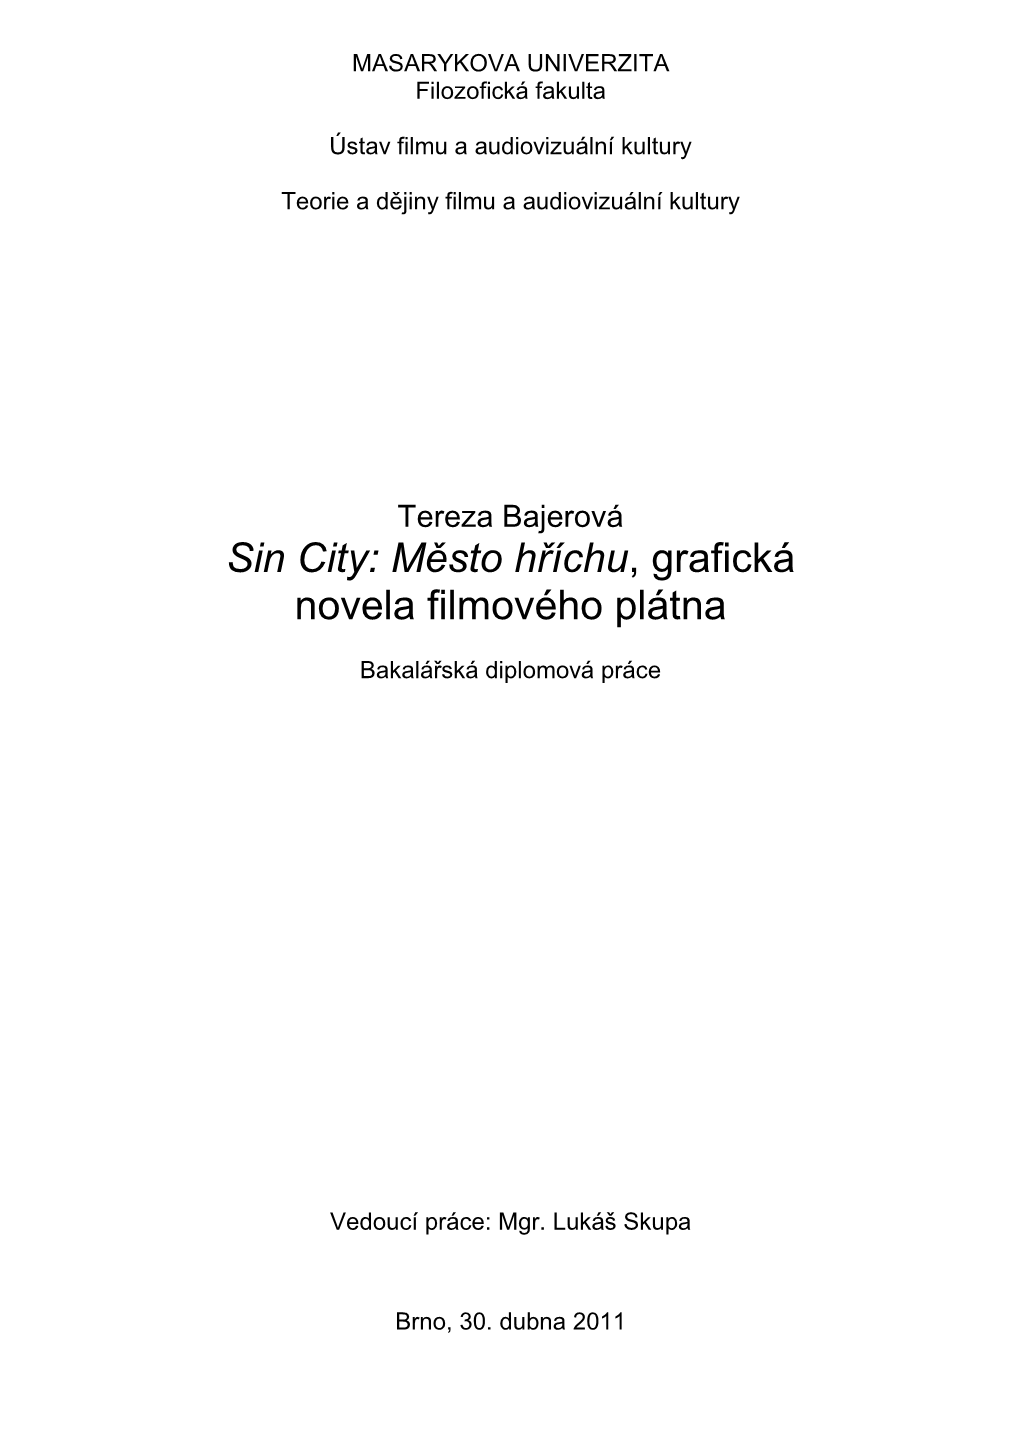 Sin City: Město Hříchu, Grafická Novela Filmového Plátna